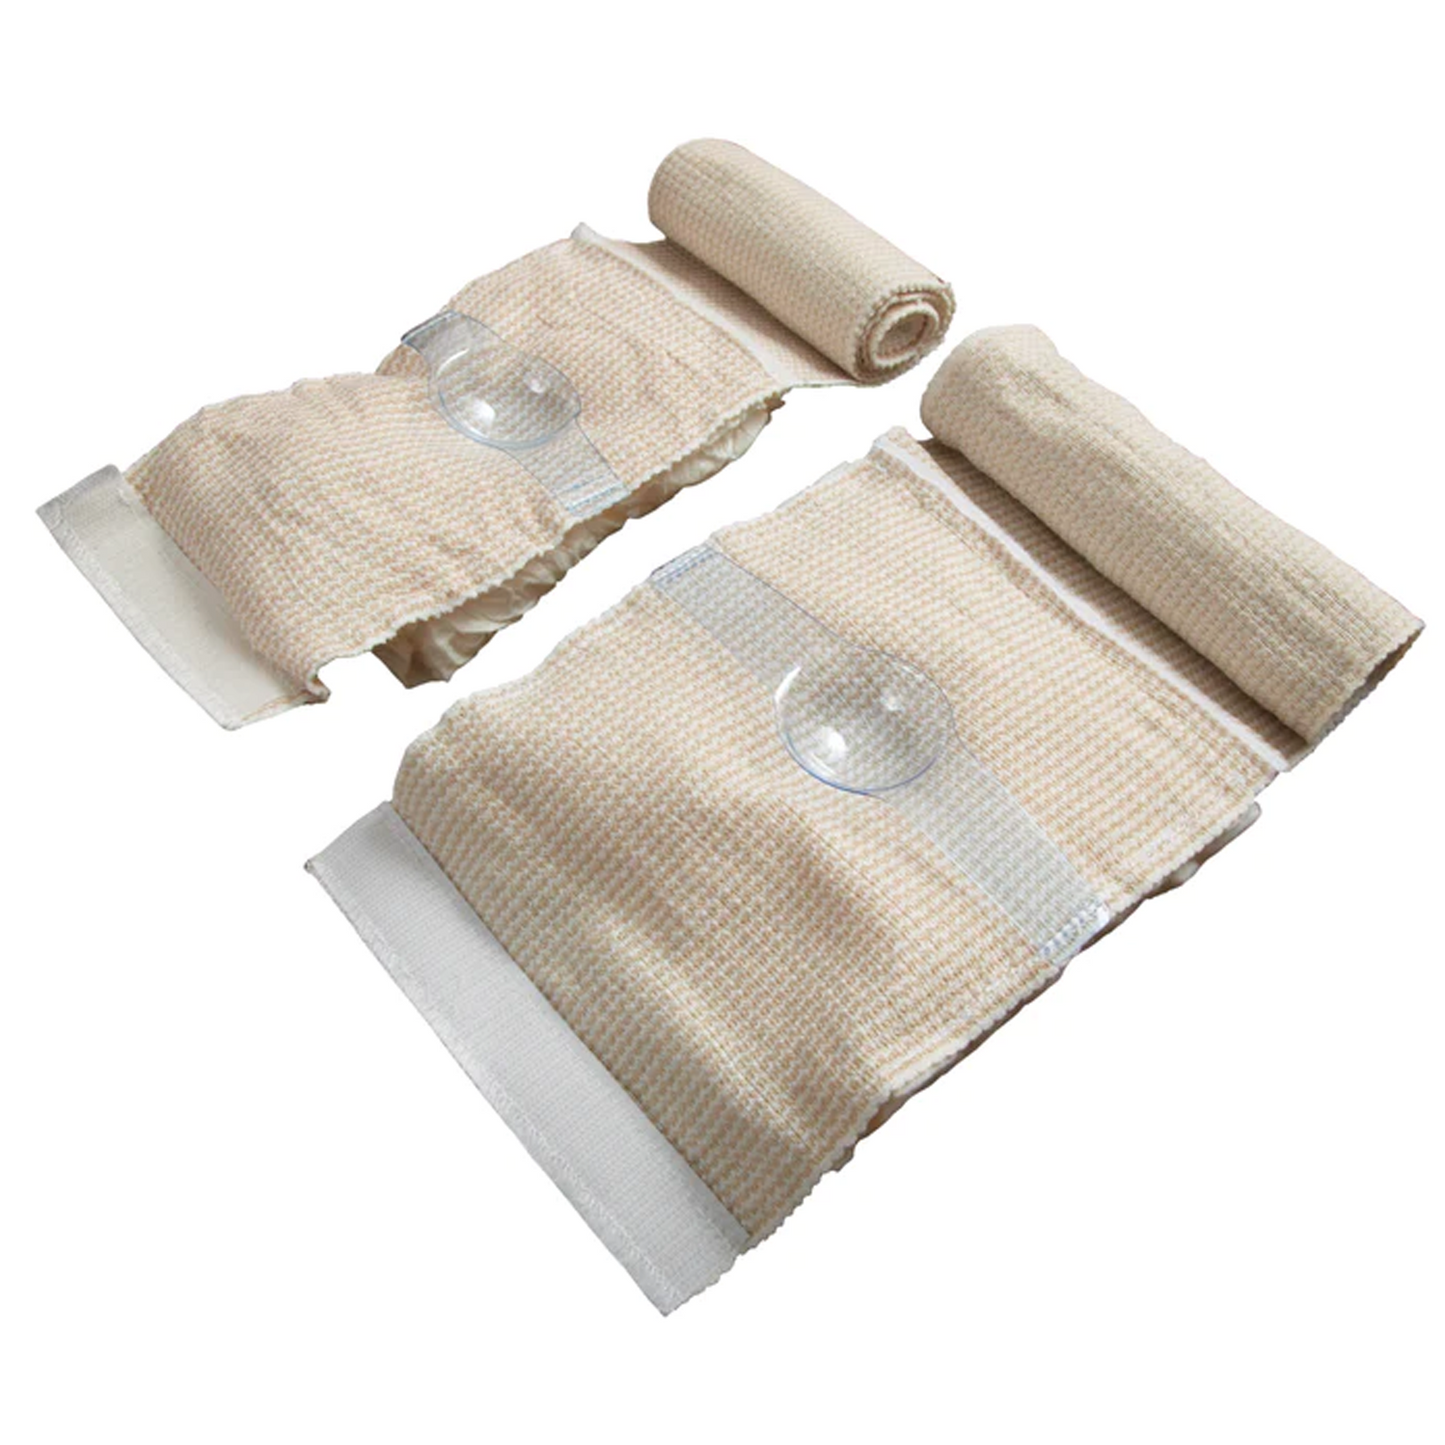 Olaes® Modular Bandage 4" - Flat Packed